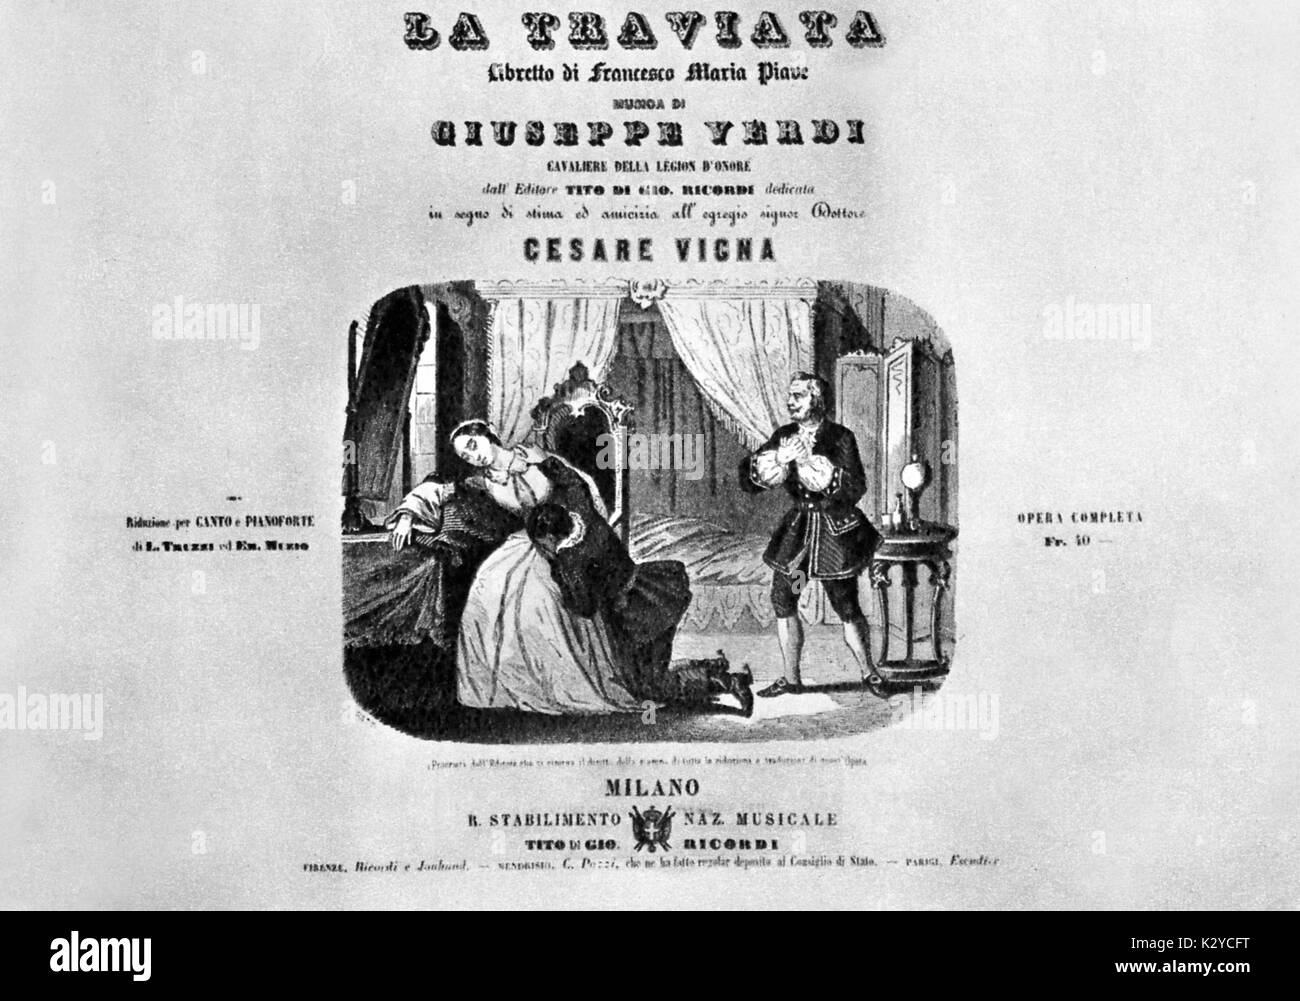 VERDI, Giuseppe - La Traviata - dernier acte établissant par Focosi, prises à partir de la première édition de score. Compositeur italien (1813-1901). Banque D'Images